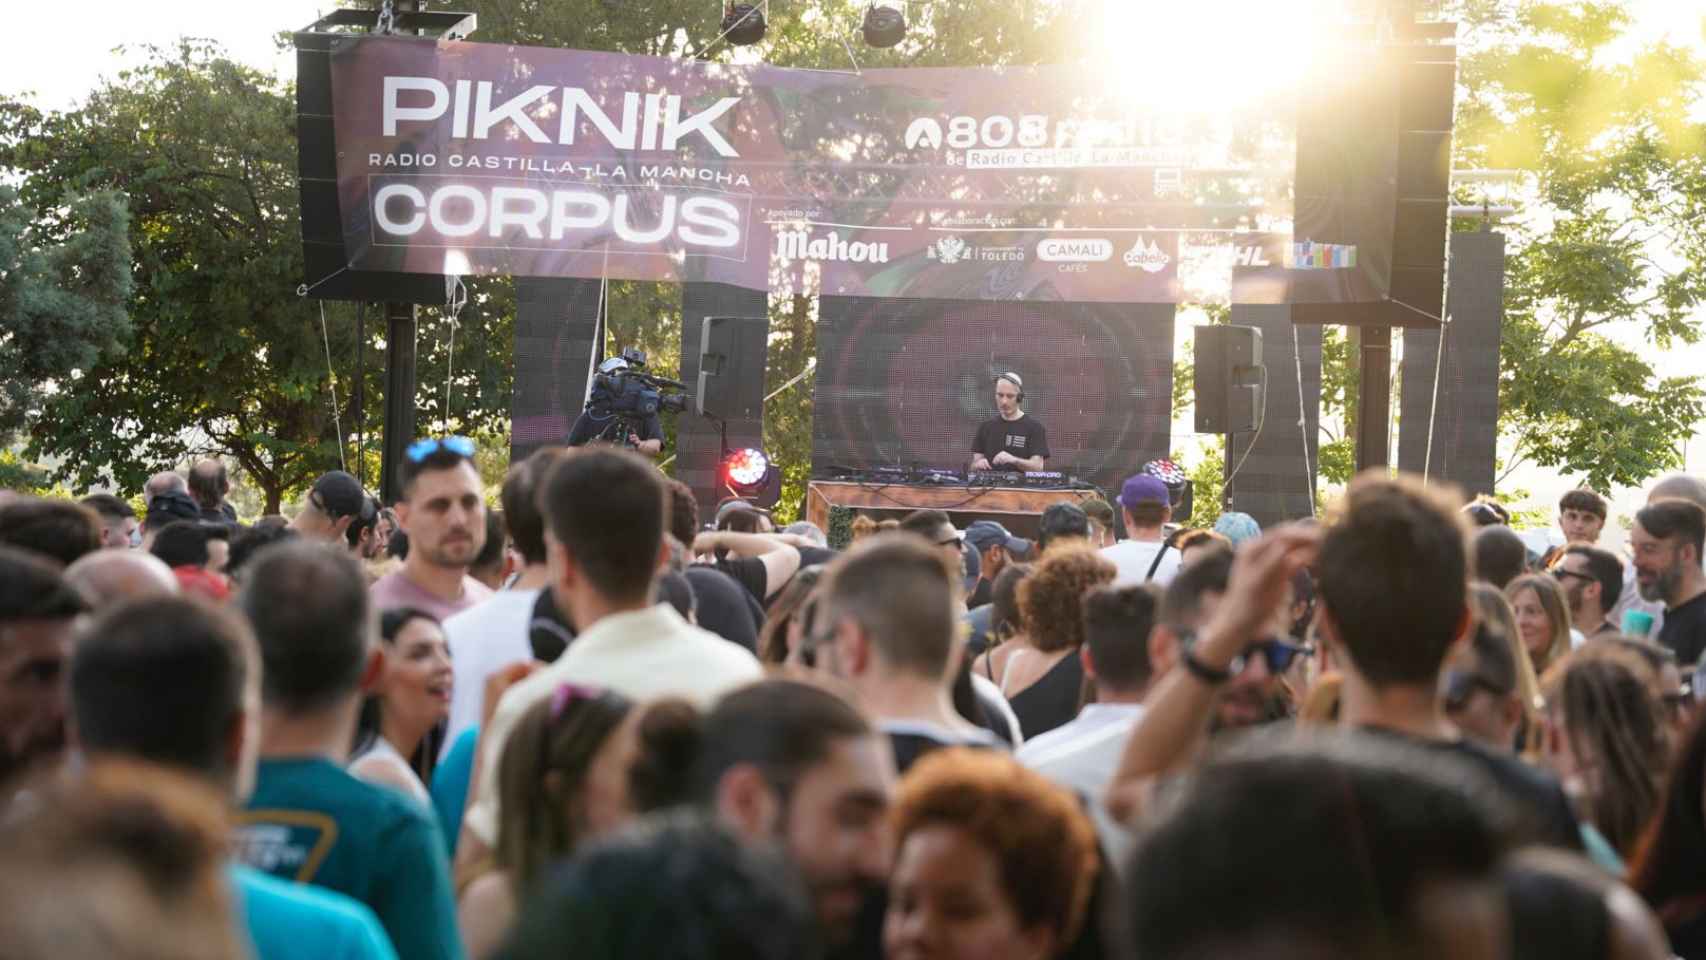 La música más vanguardista pone a bailar a 2.000 toledanos en el Piknik del Corpus